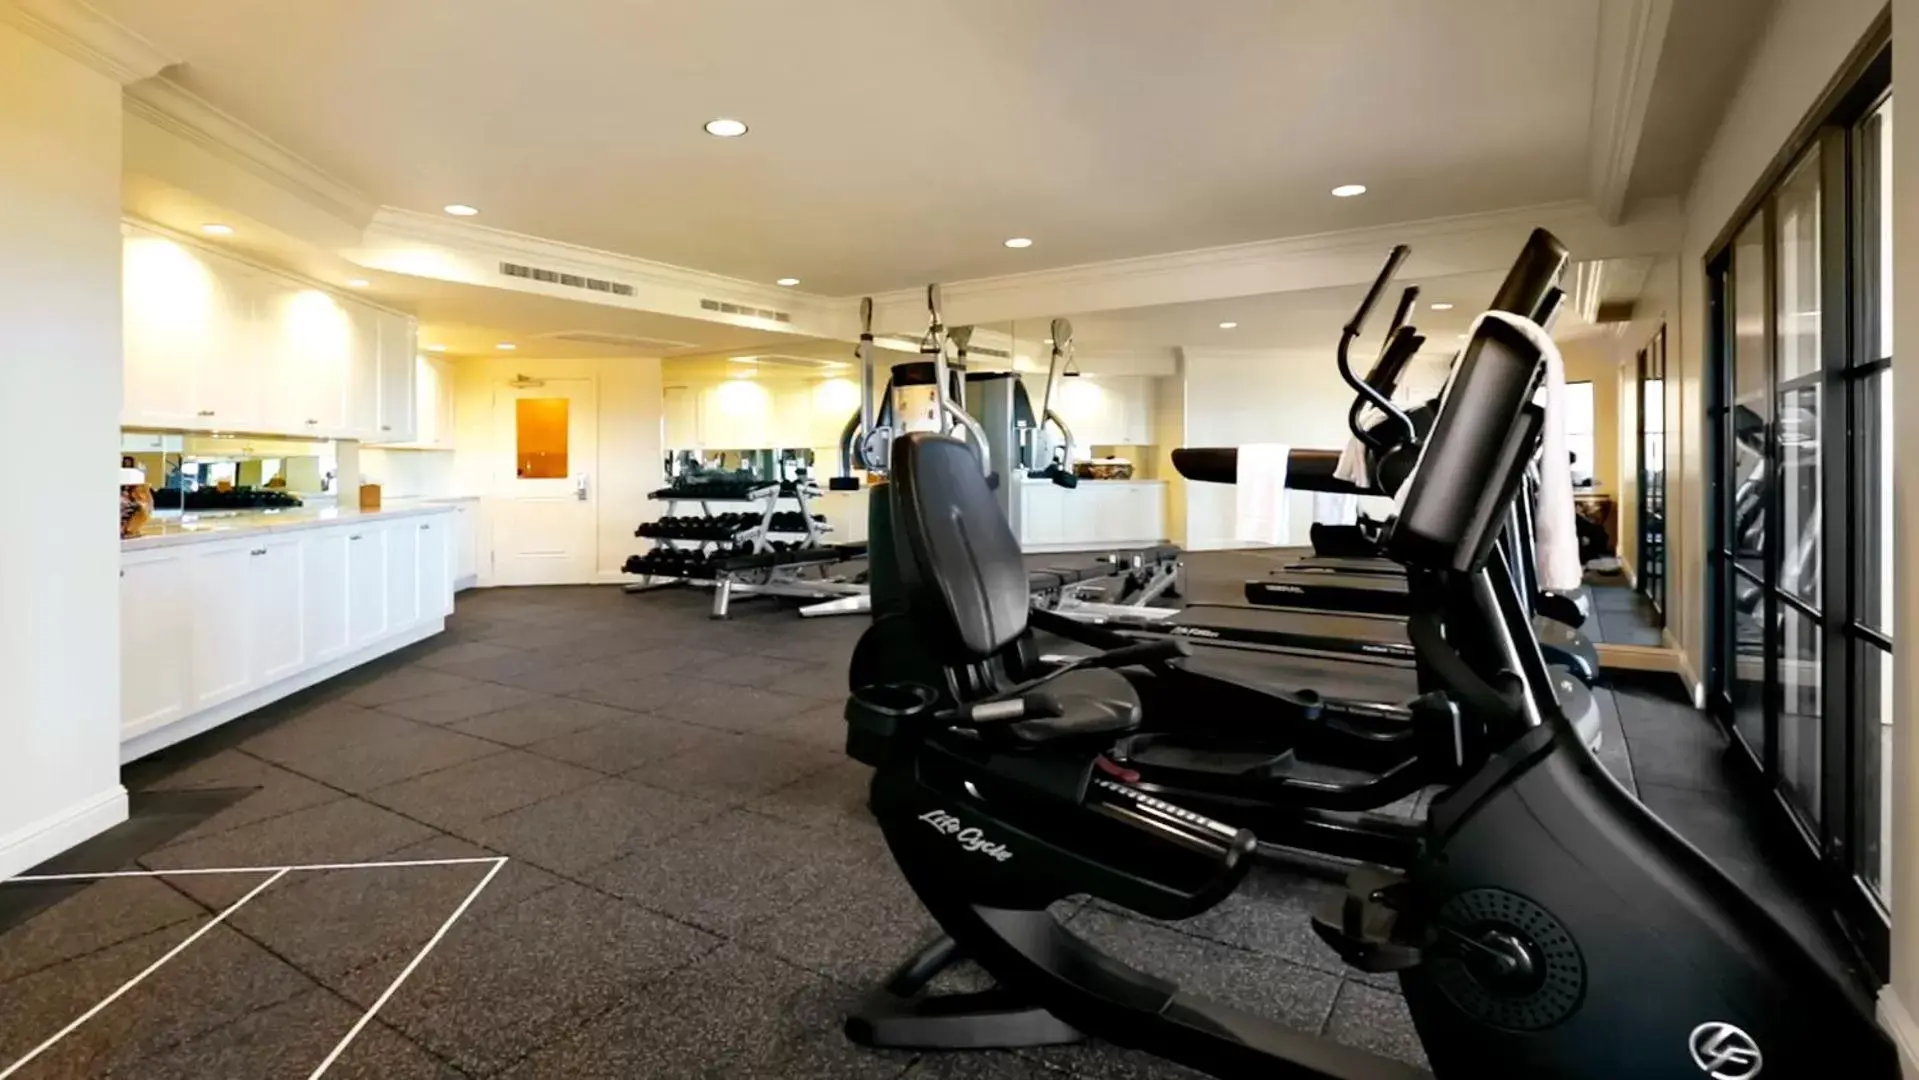 Fitness centre/facilities, Fitness Center/Facilities in Santa Barbara Inn